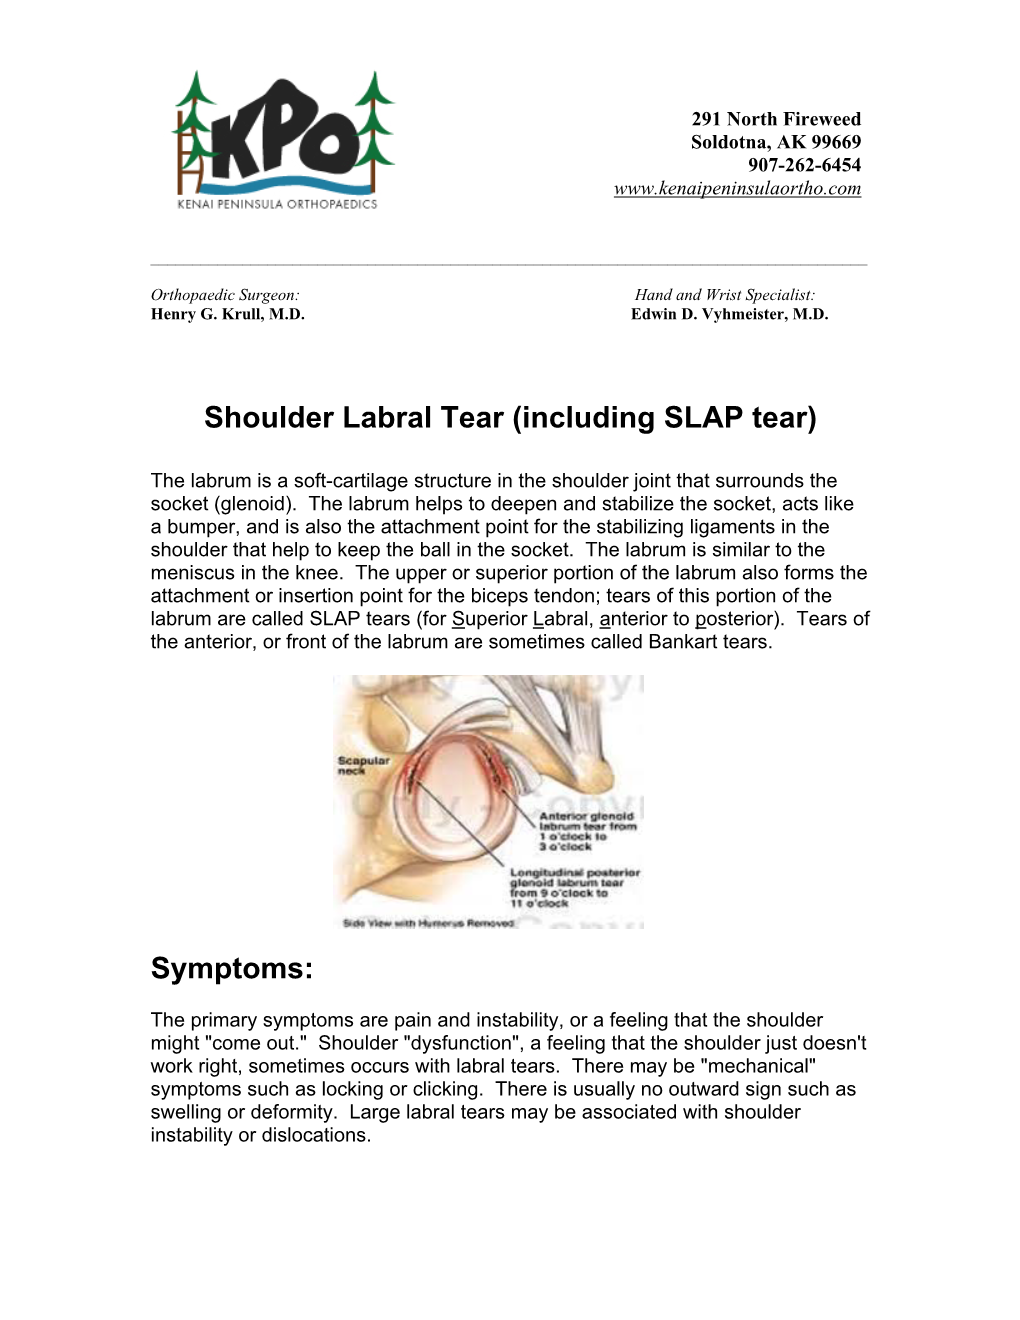 Shoulder Labral Tear (Including SLAP Tear)